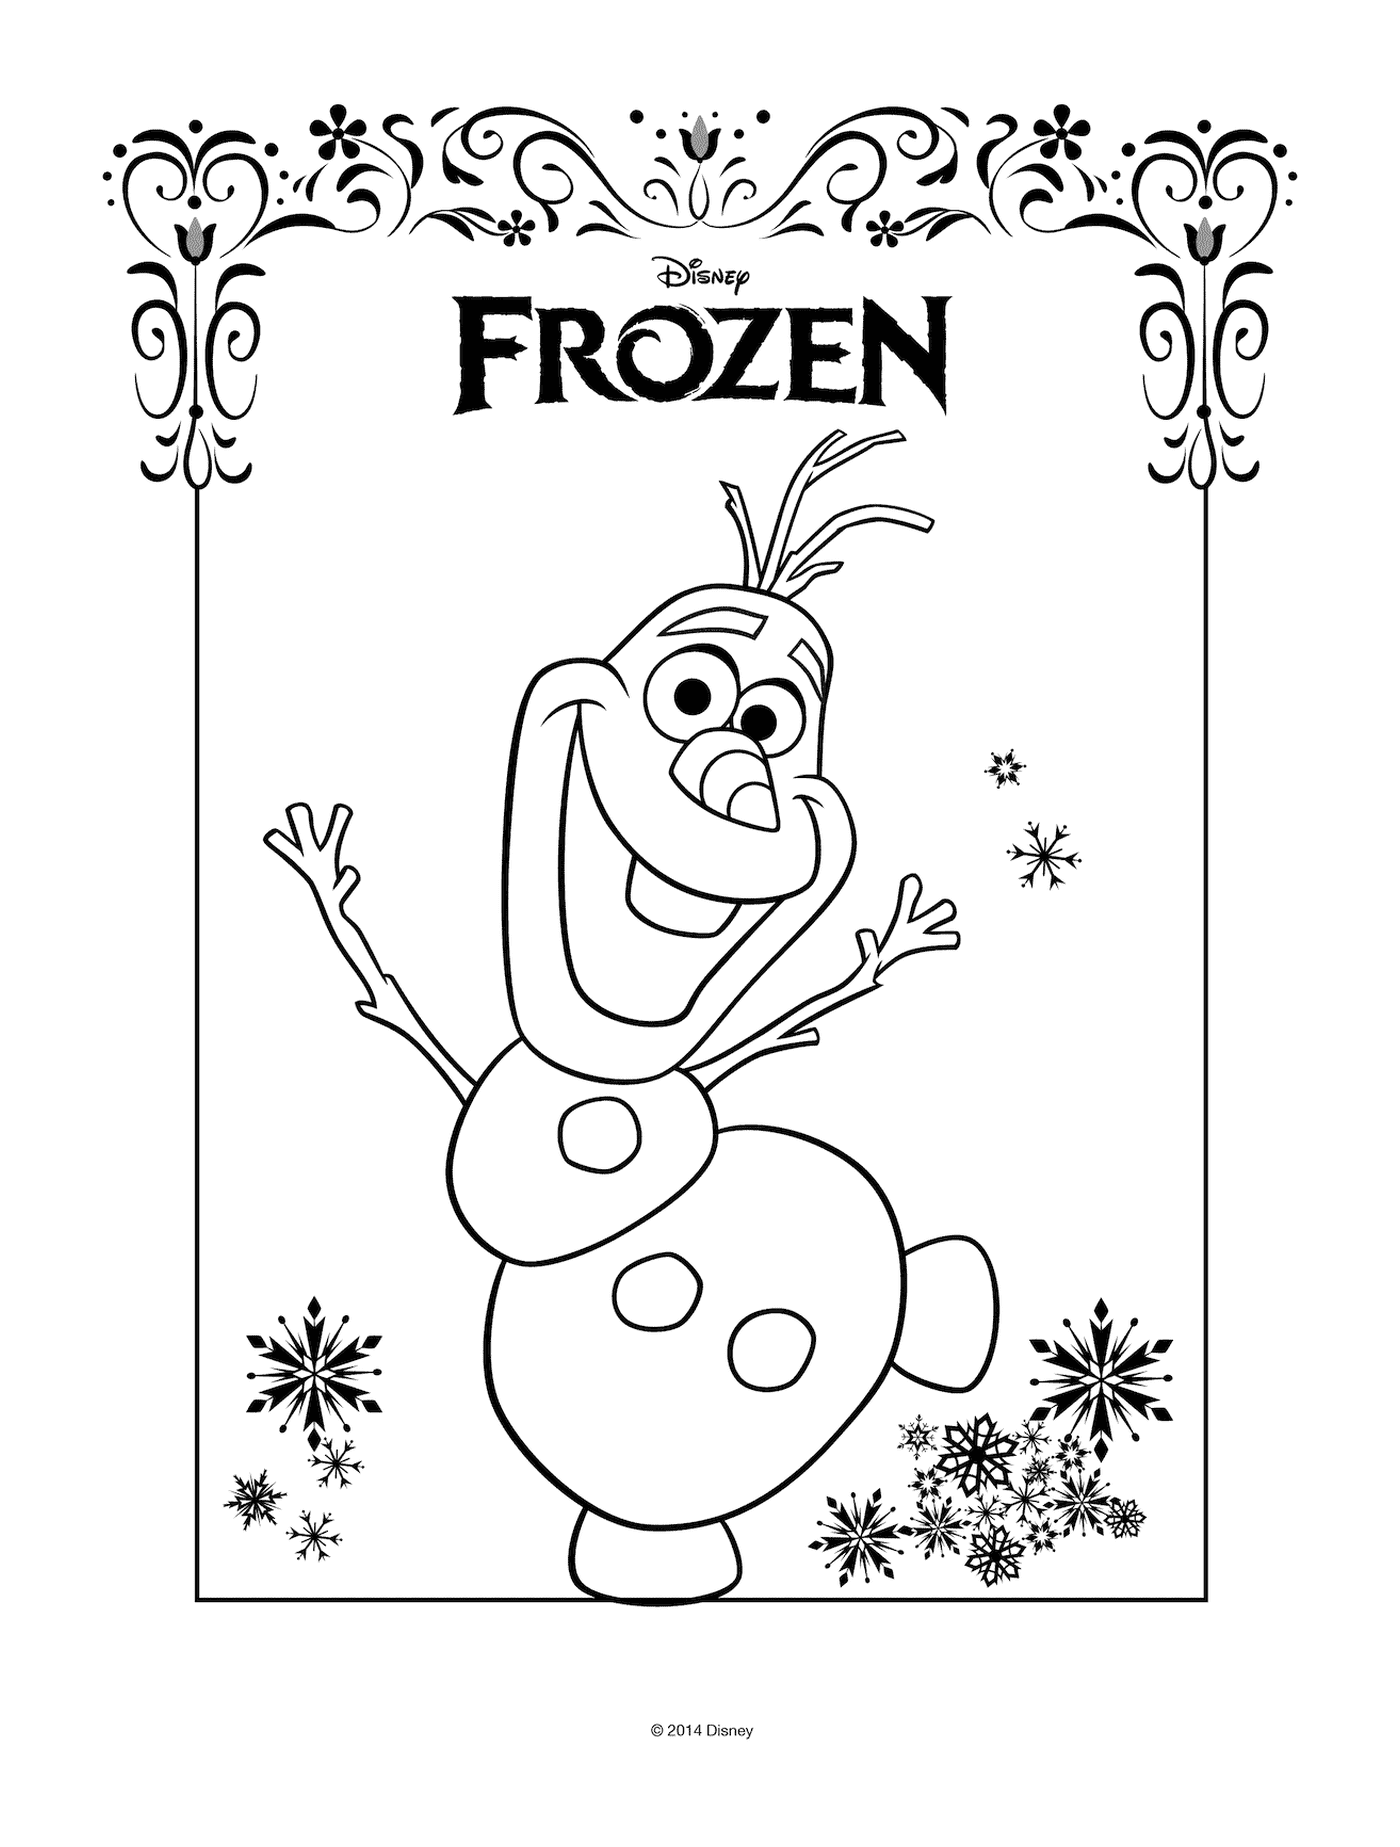  Olaf com o logotipo da Disney Frozen 